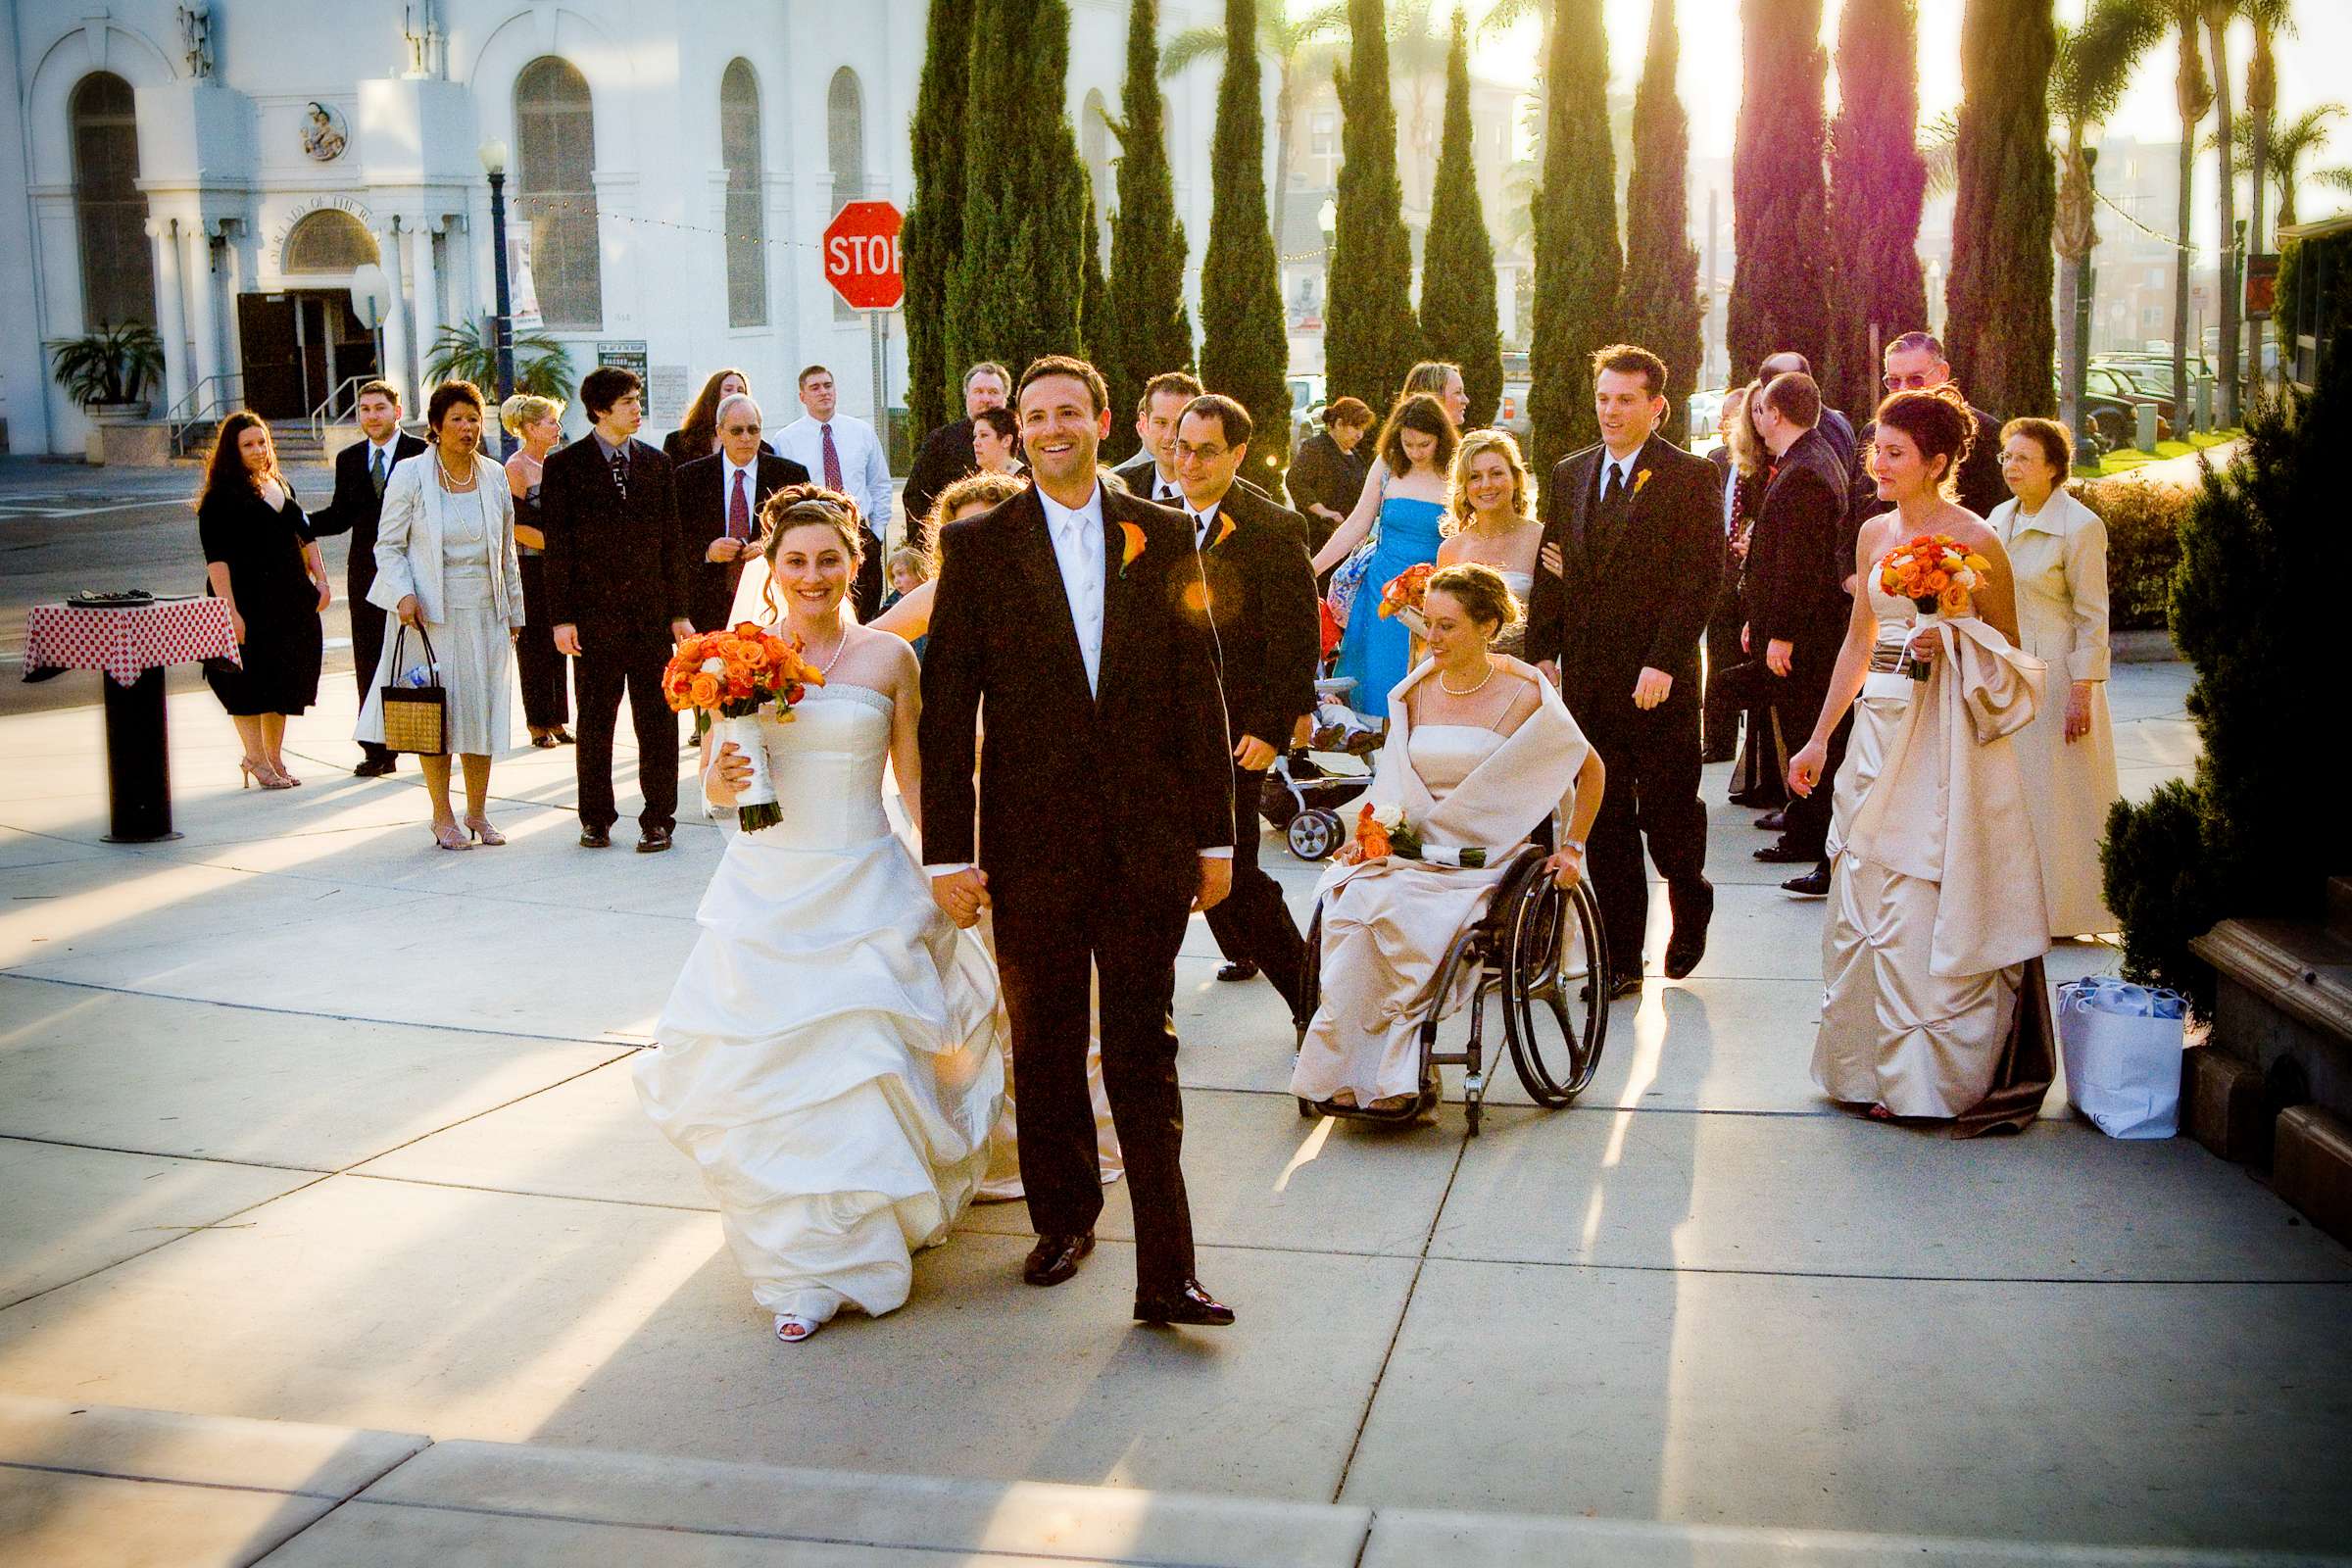 El Cortez Wedding, Laura and David Wedding Photo #29 by True Photography